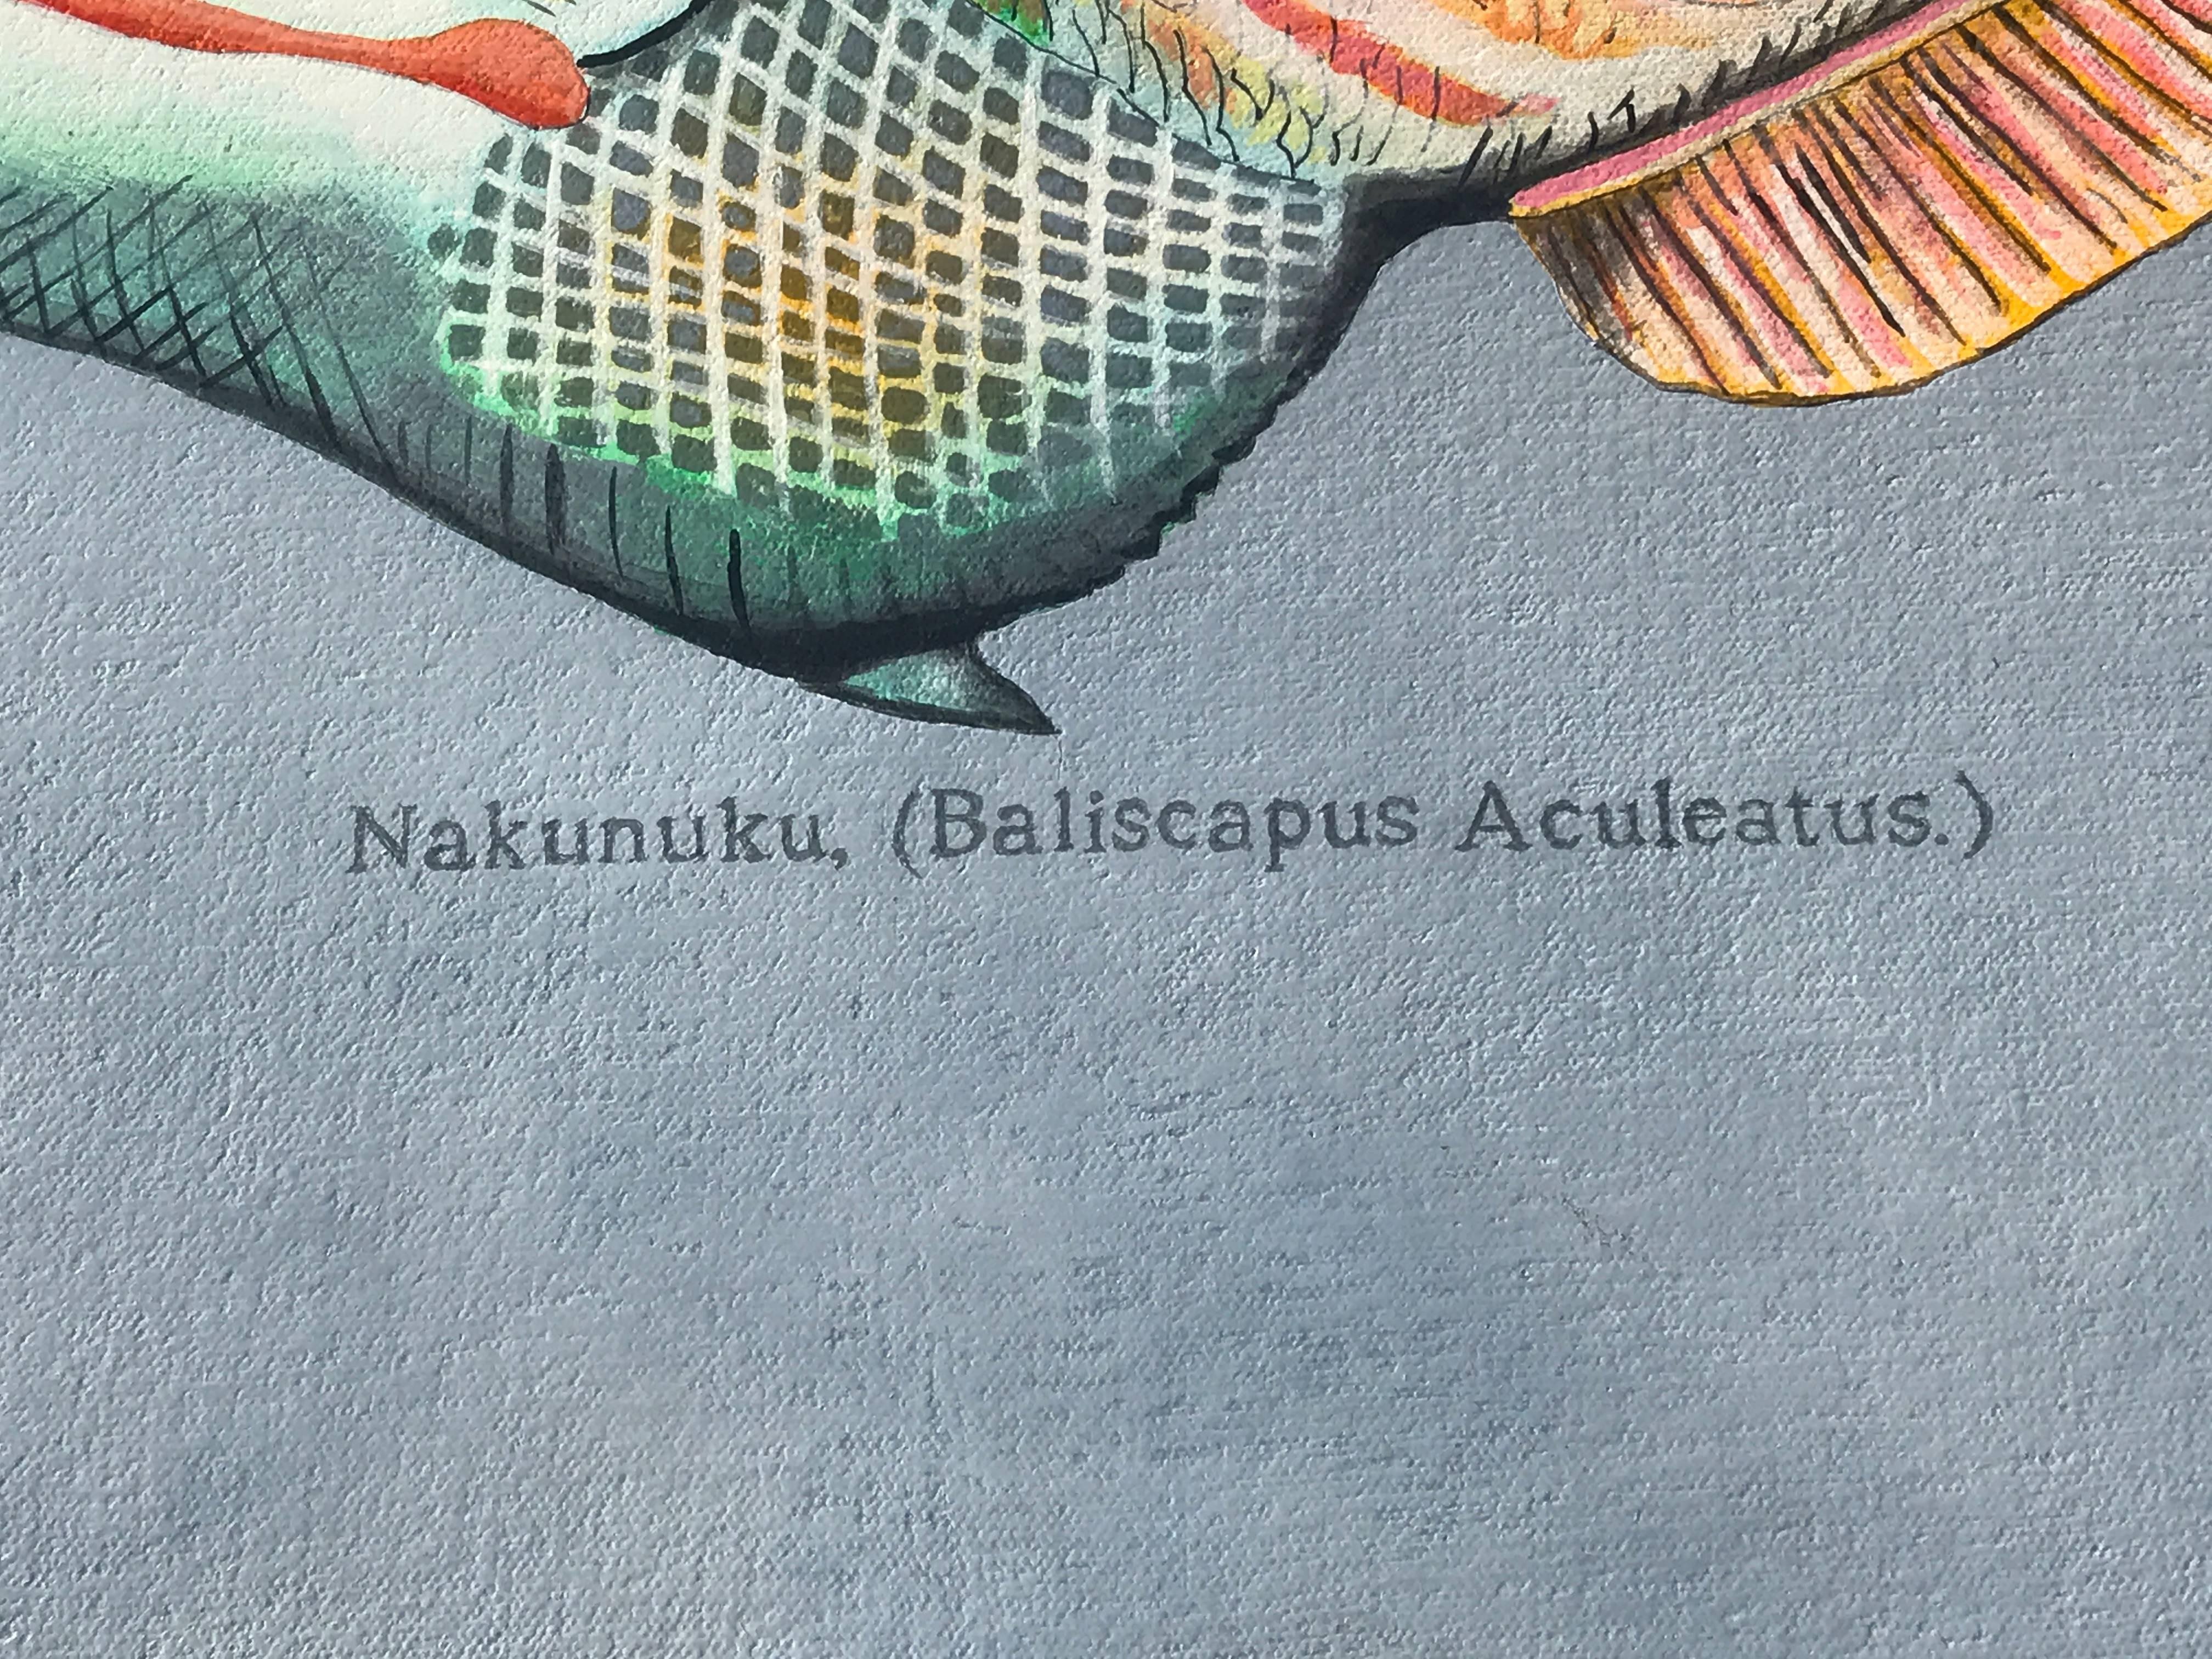 Nakunuku - Contemporary Painting by Rick Kroninger